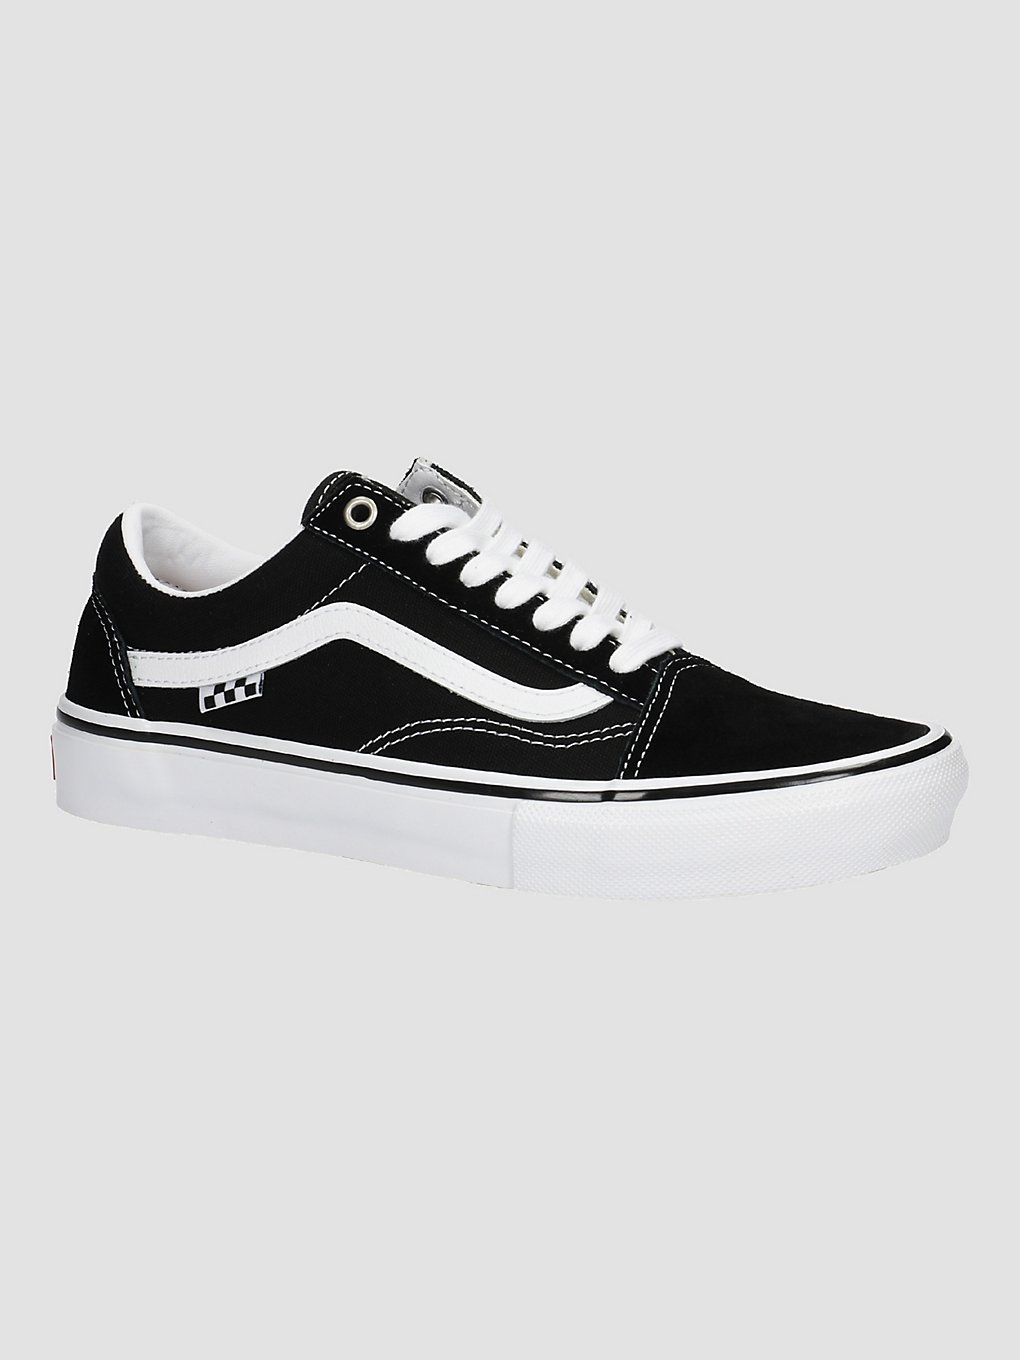 Men's Vans Skate Old Skool Shoes - Black/White - Black/Black White